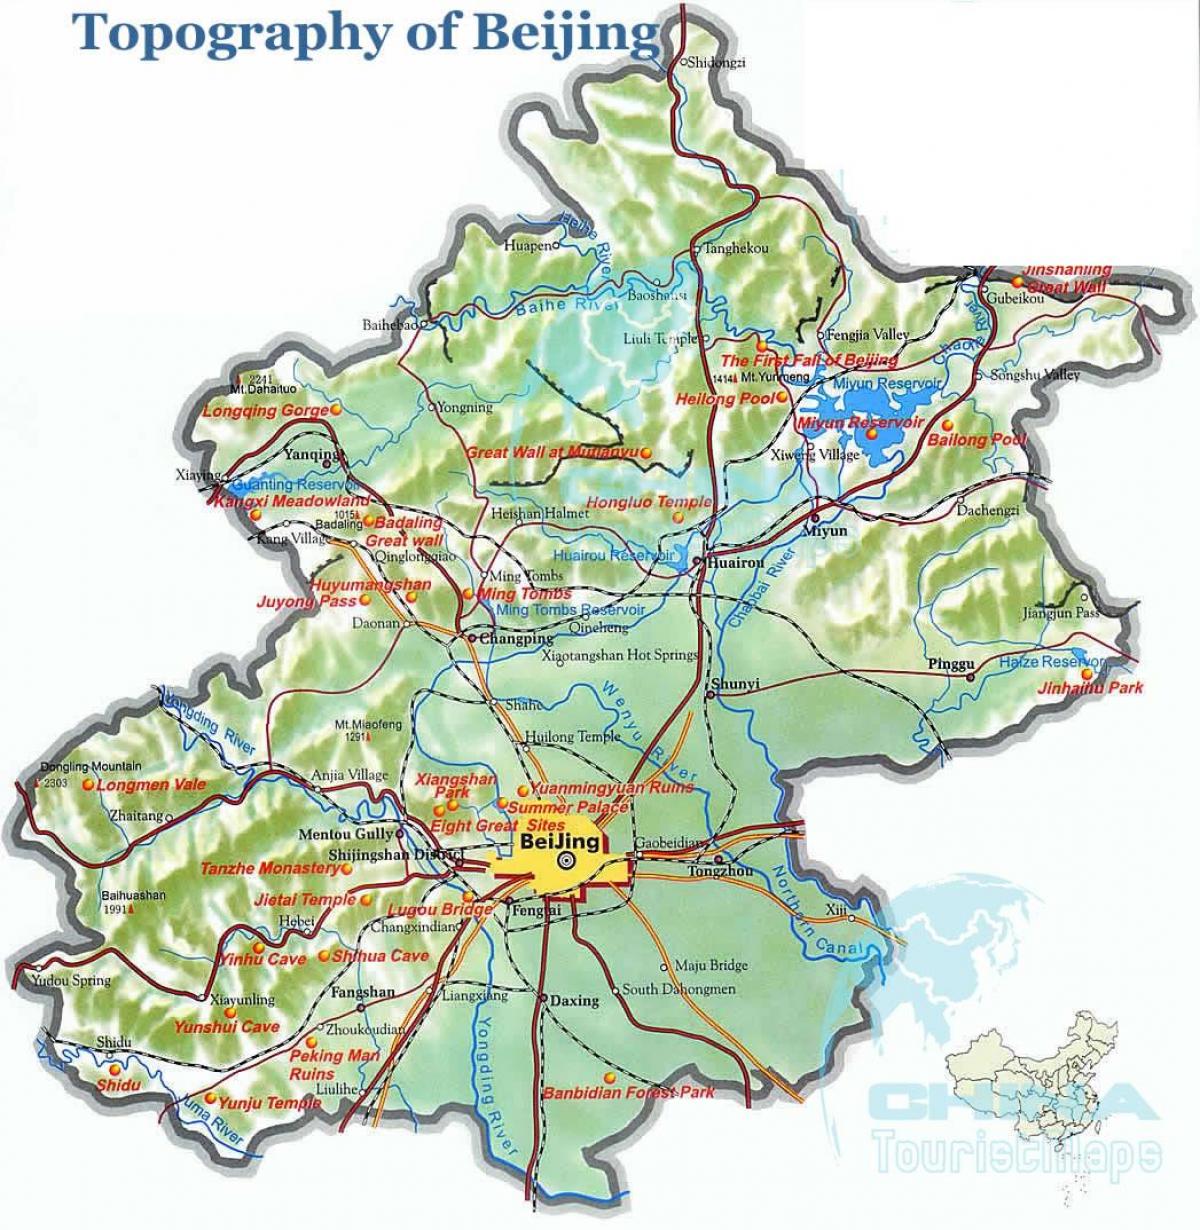 el mapa topográfico de Beijing